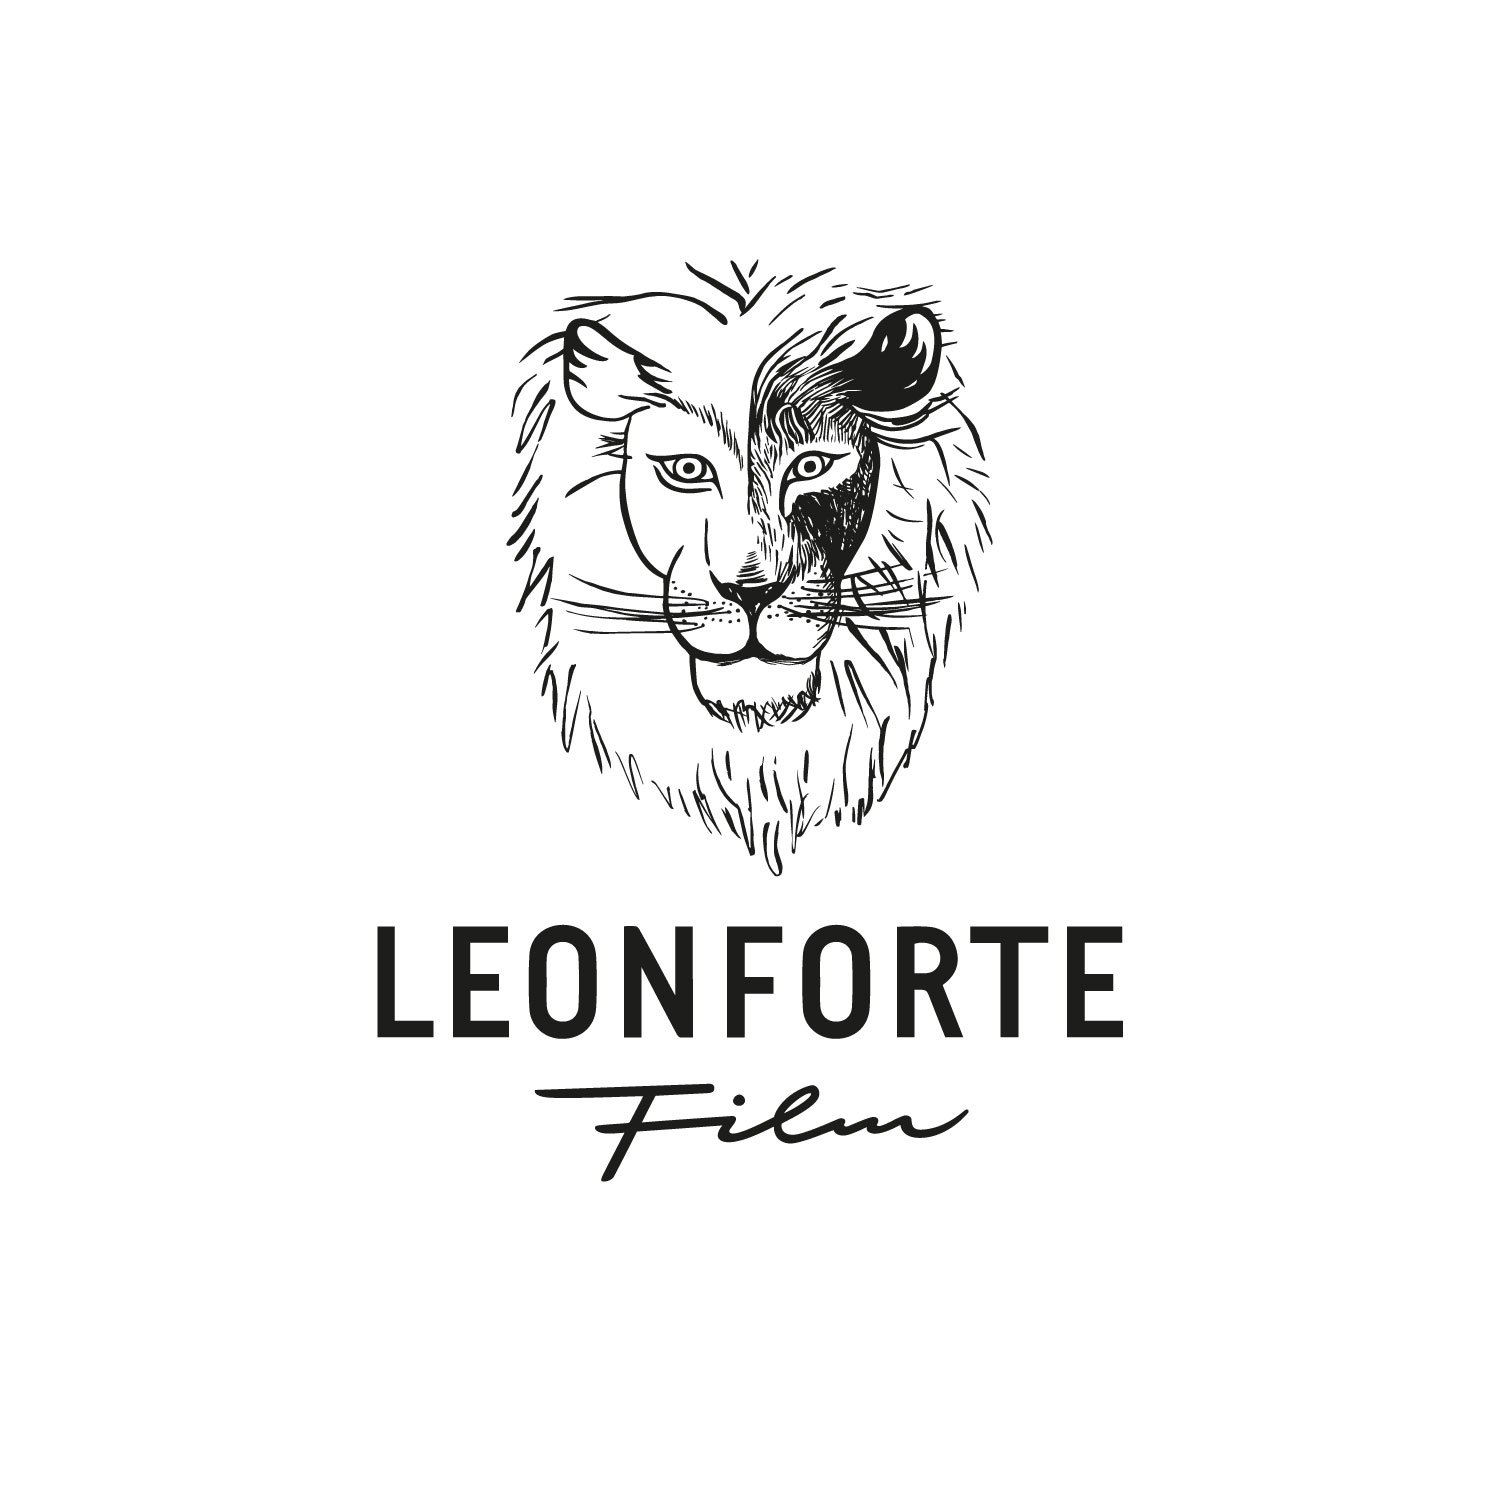 leonforte.film_logo_socialMedia_1500px_01.jpg